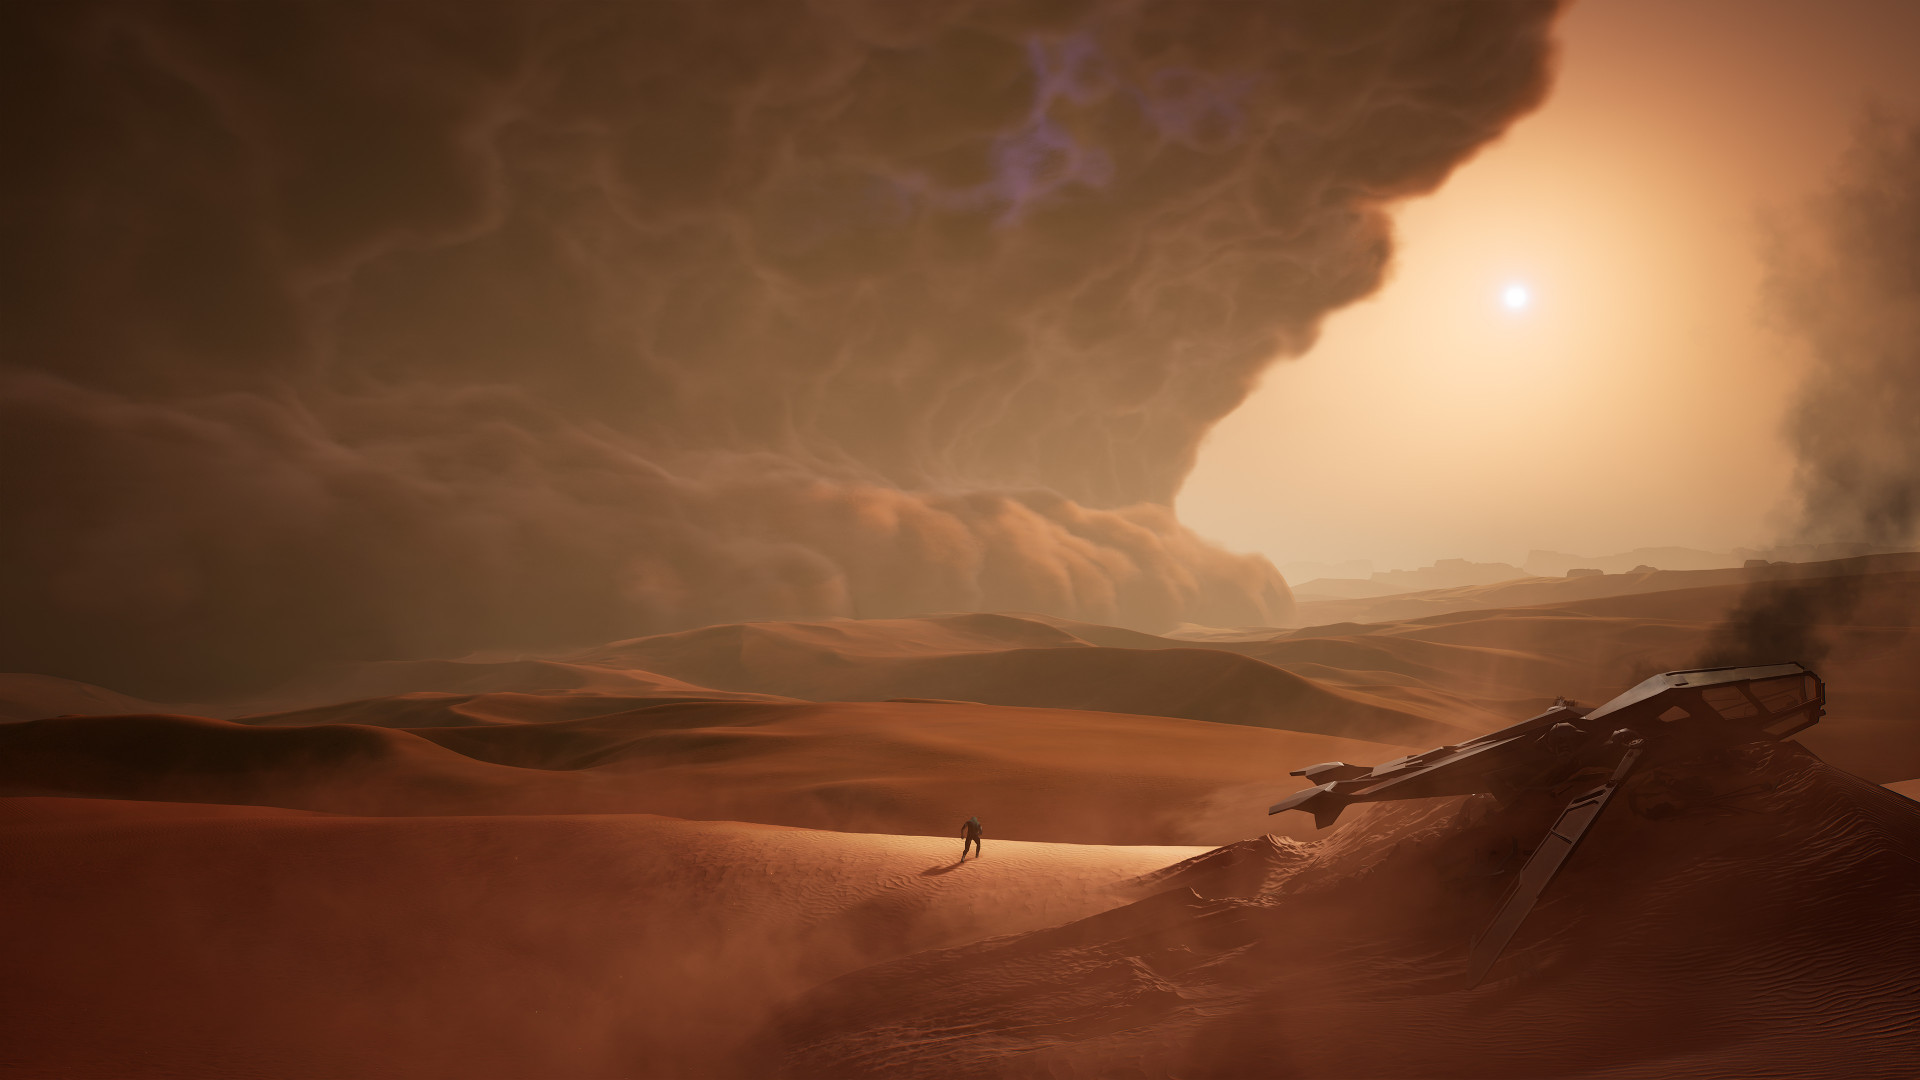 Новый трейлер Dune Awakening